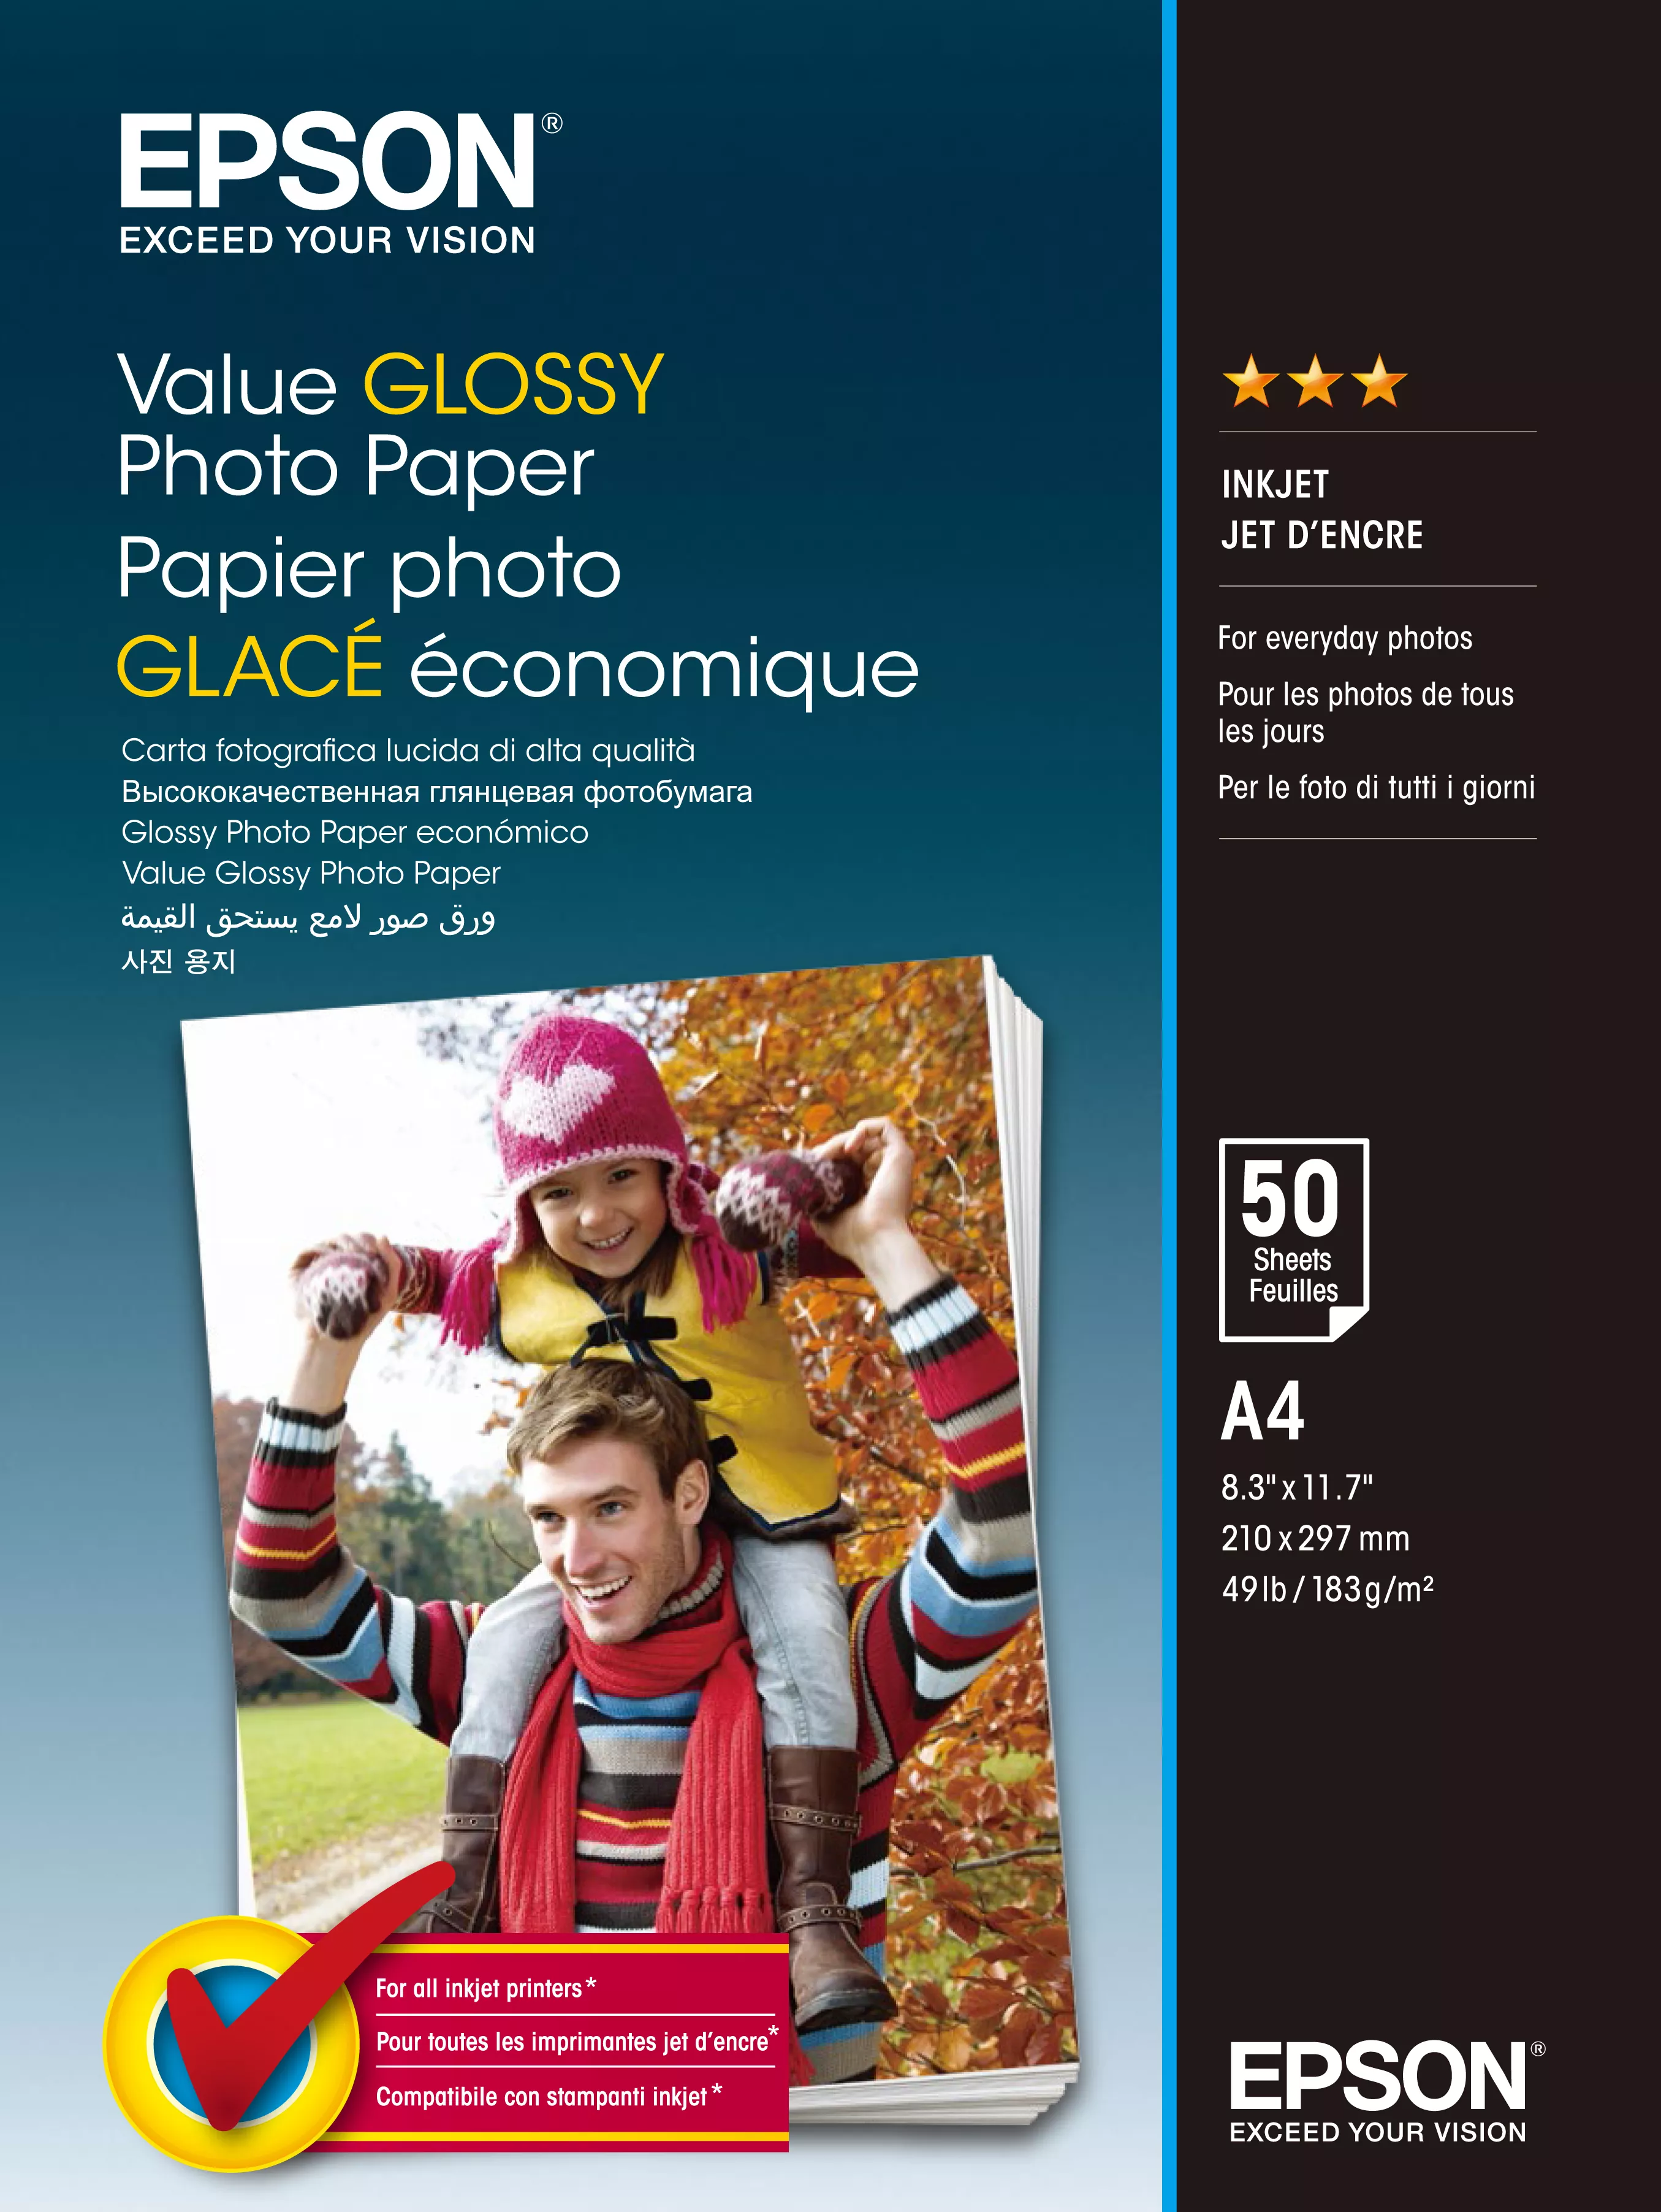 Vente Epson Value Glossy Photo Paper - A4 - Epson au meilleur prix - visuel 2